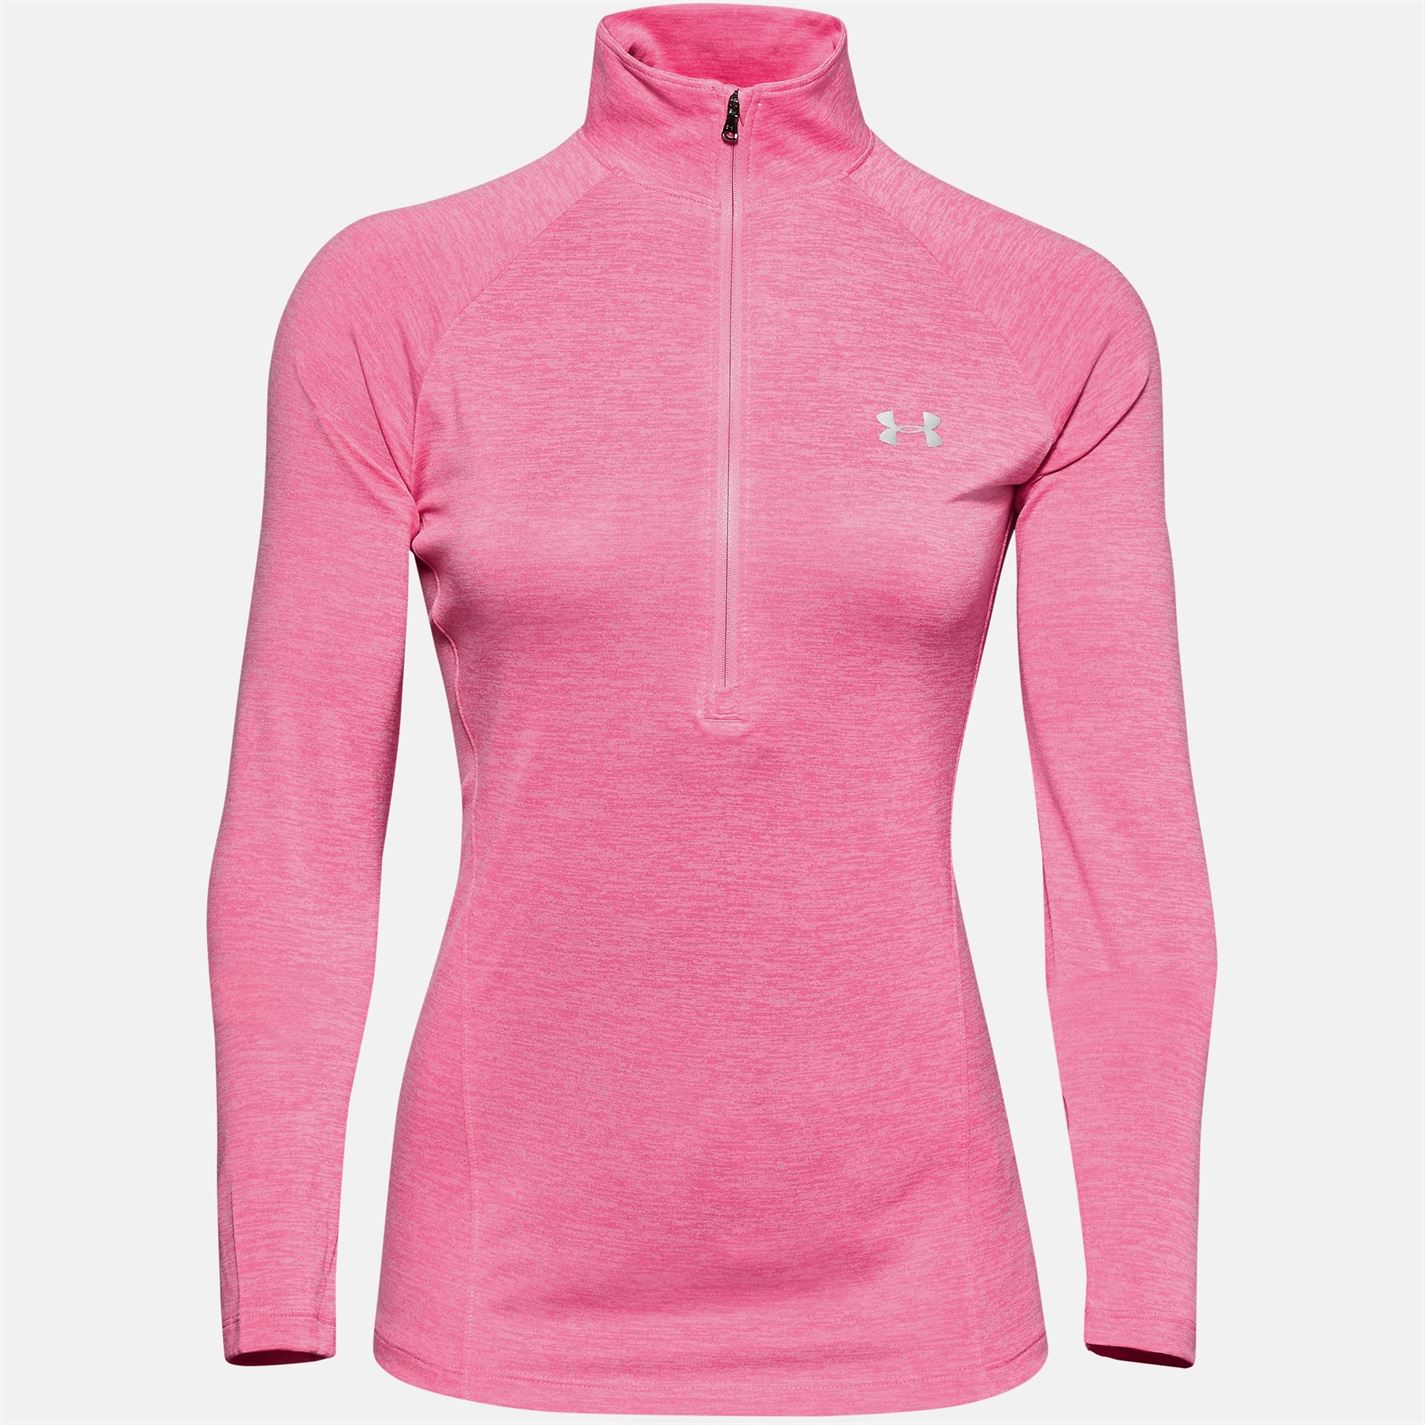 Bluza cu fermoar Under Armour Technical pentru femei rosu